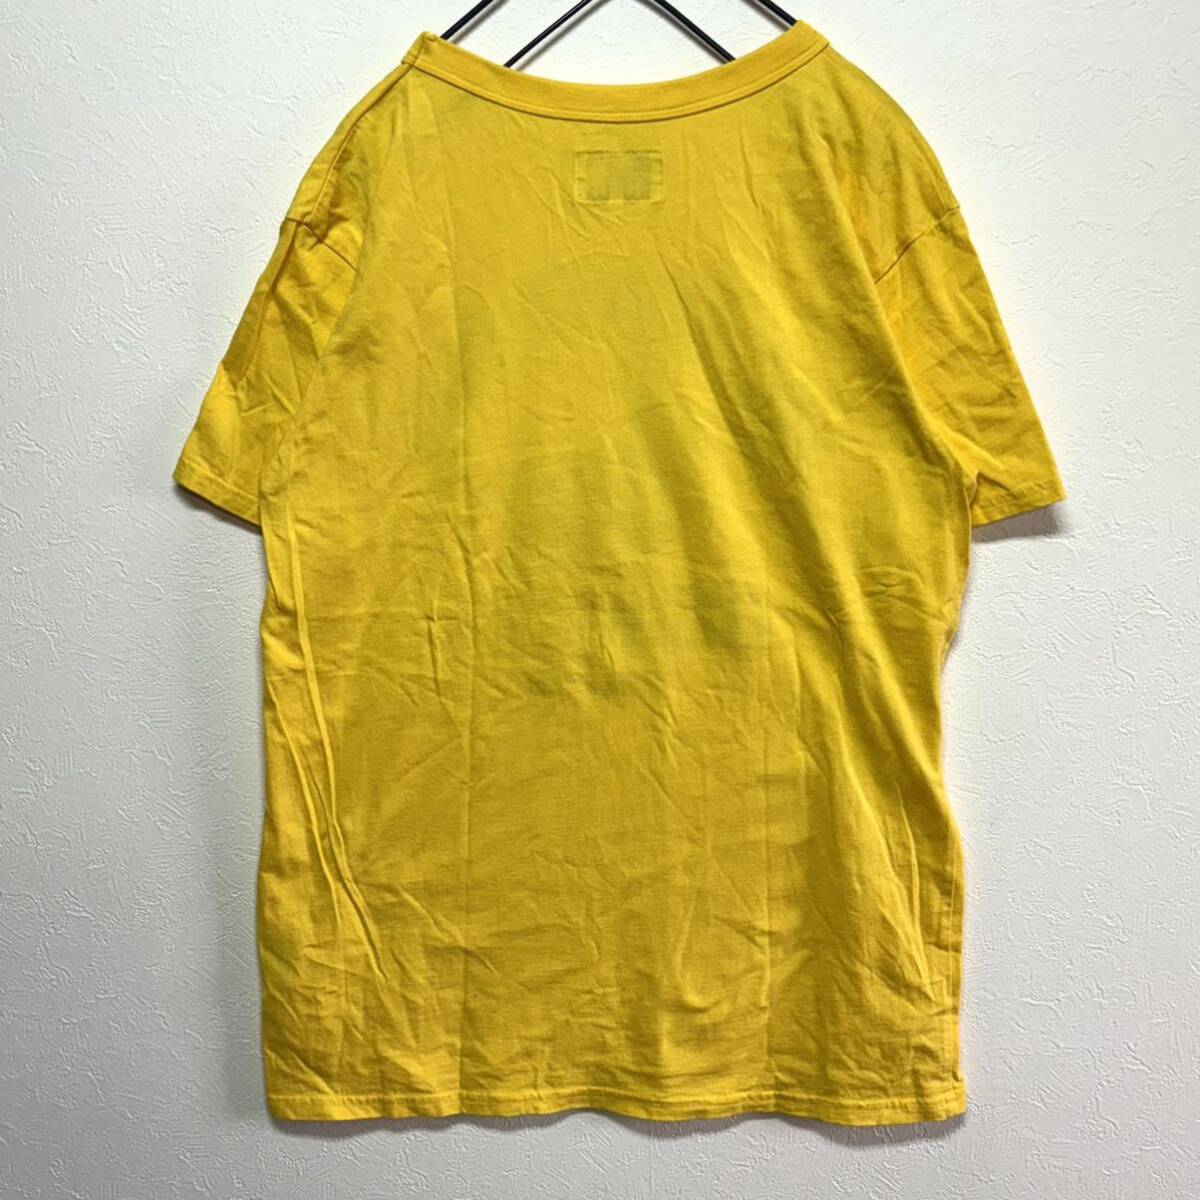 【希少】THE NORTH FACE ザノースフェイス 半袖 Tシャツ S メンズM相当 茶タグ 80年代復刻 夏 イエロー 黄色 ヴィンテージ 美品 ロゴ レア